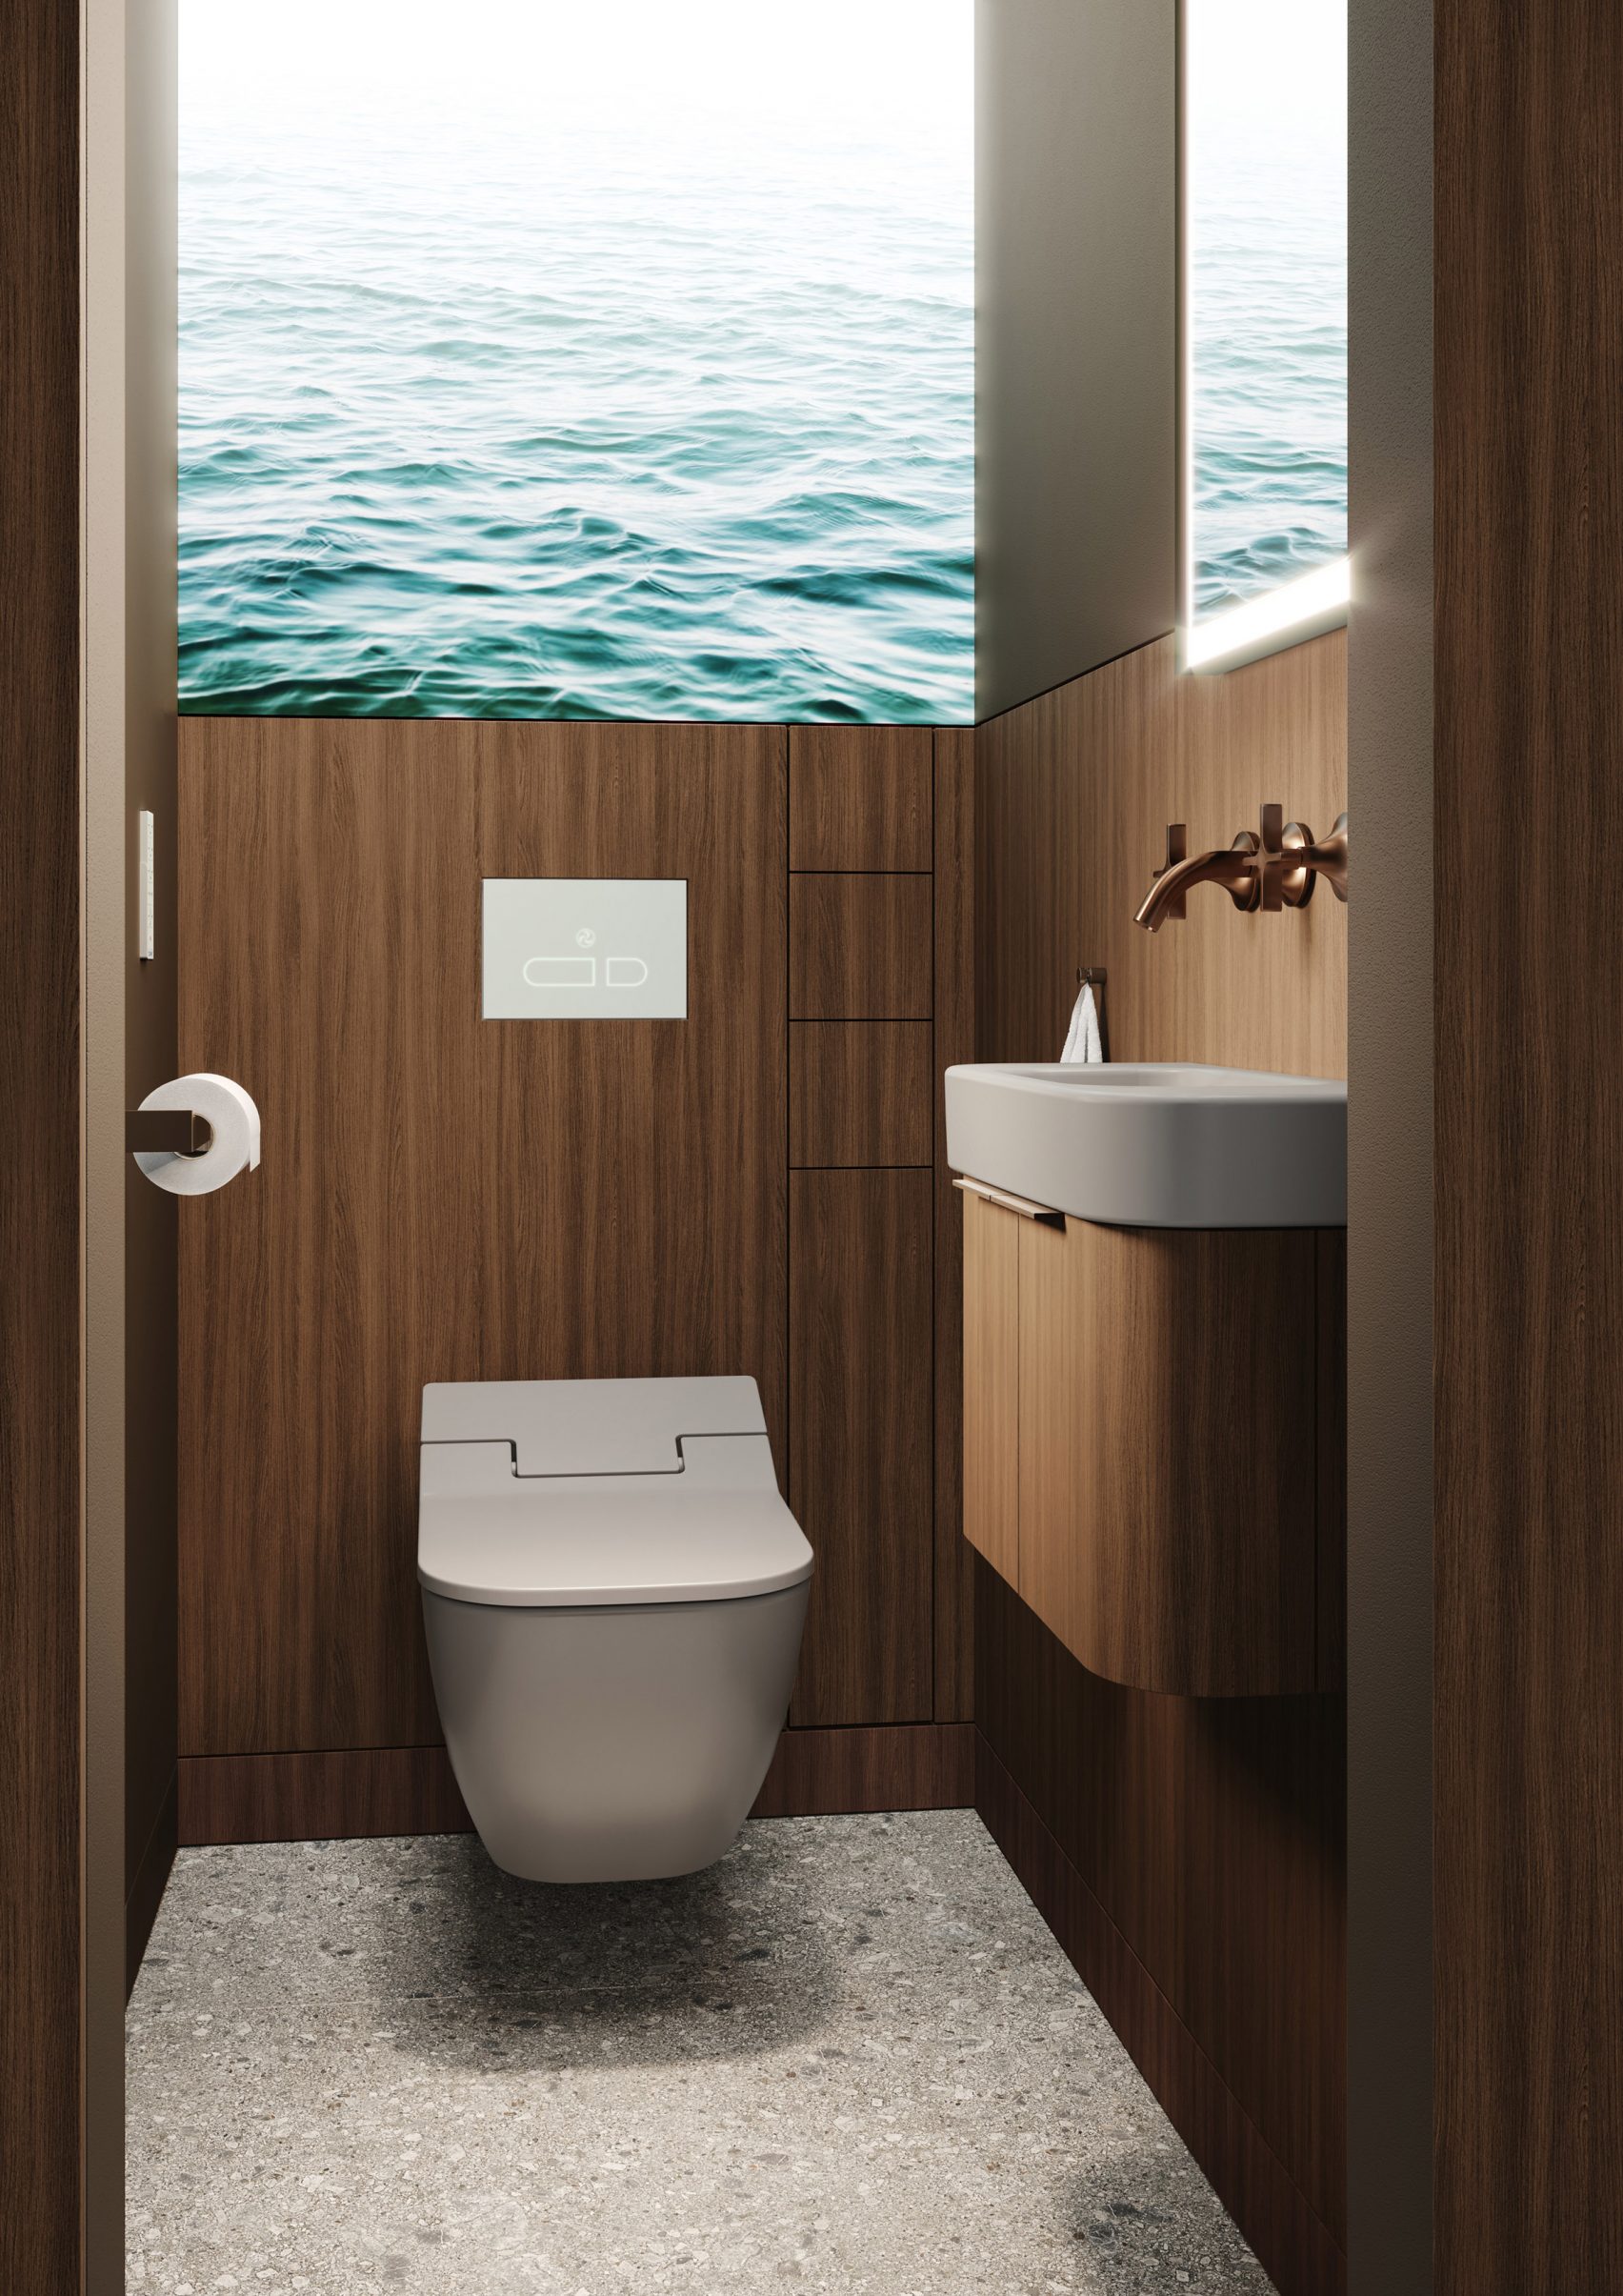 Sieger Design creëert kleine spa badkamer voor kleine appartementen